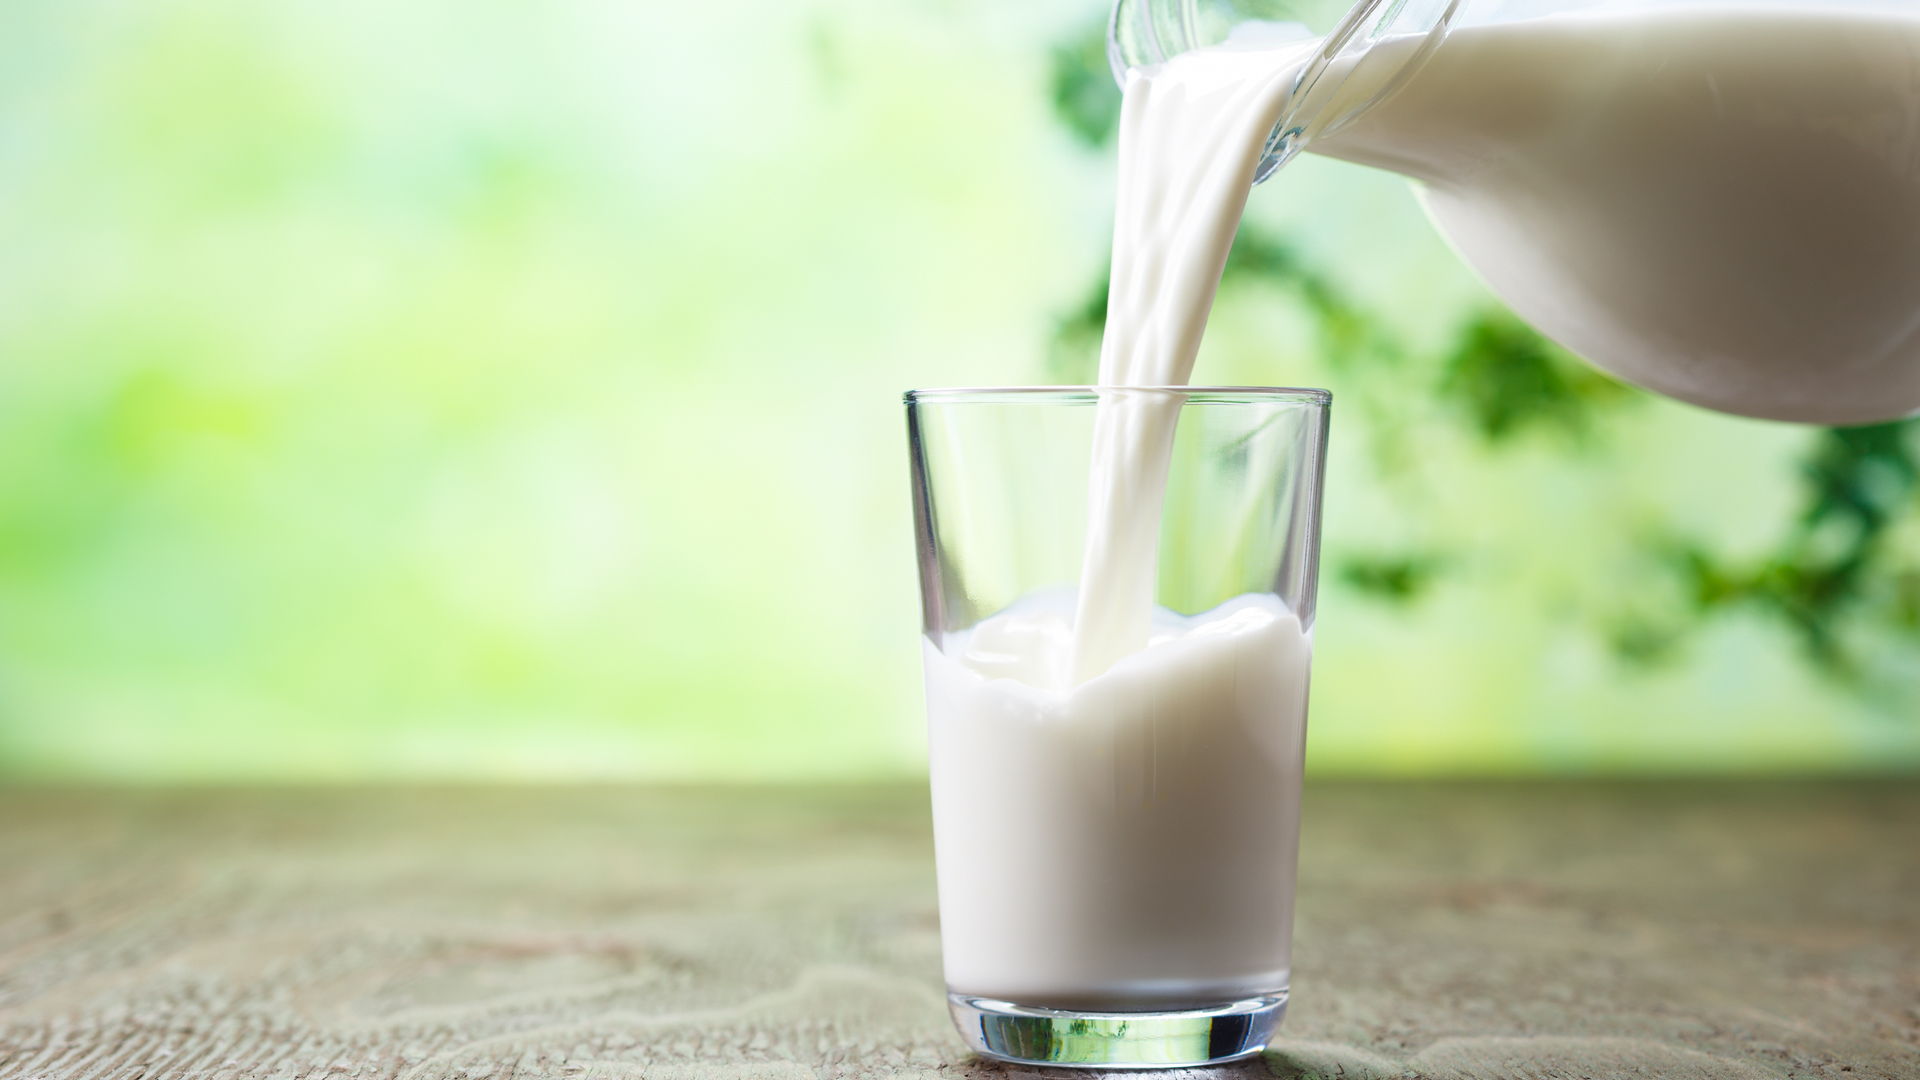 Los alimentos más alergénicos son la leche de vaca y el huevo, seguidos por la soja, el trigo, frutos secos, pescados, mariscos y maní (iStock)